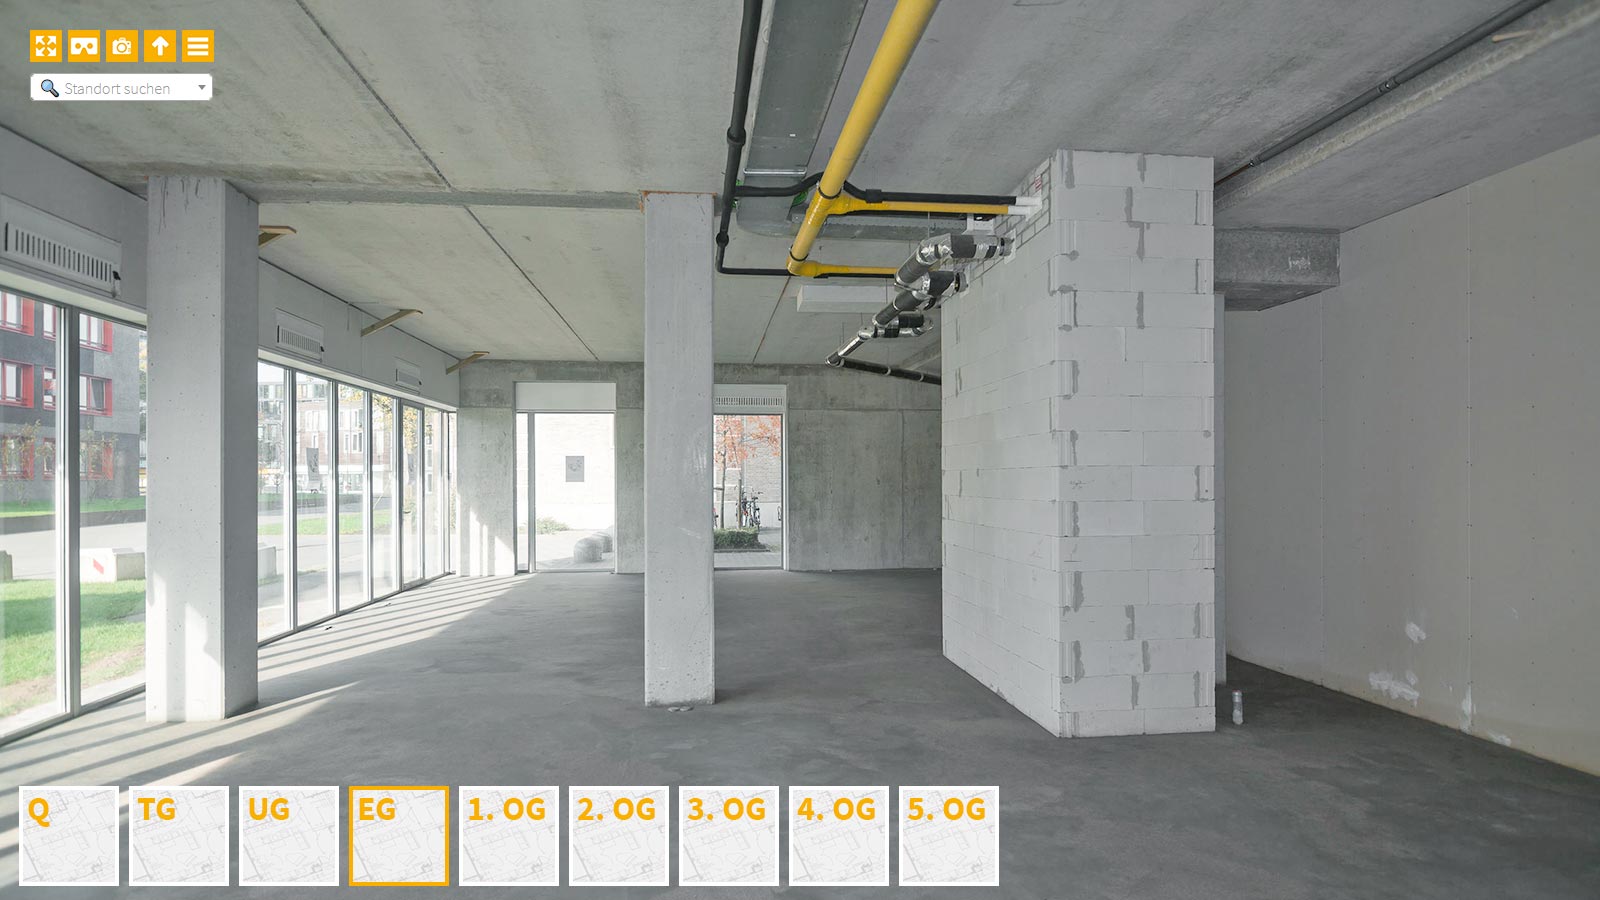 Baudokumentation 360 Grad bei gestörten Projekten in 


	


	


	


	


	


	


	


	


	


	Cottbus









, Bilddokumentation als virtueller Rundgang